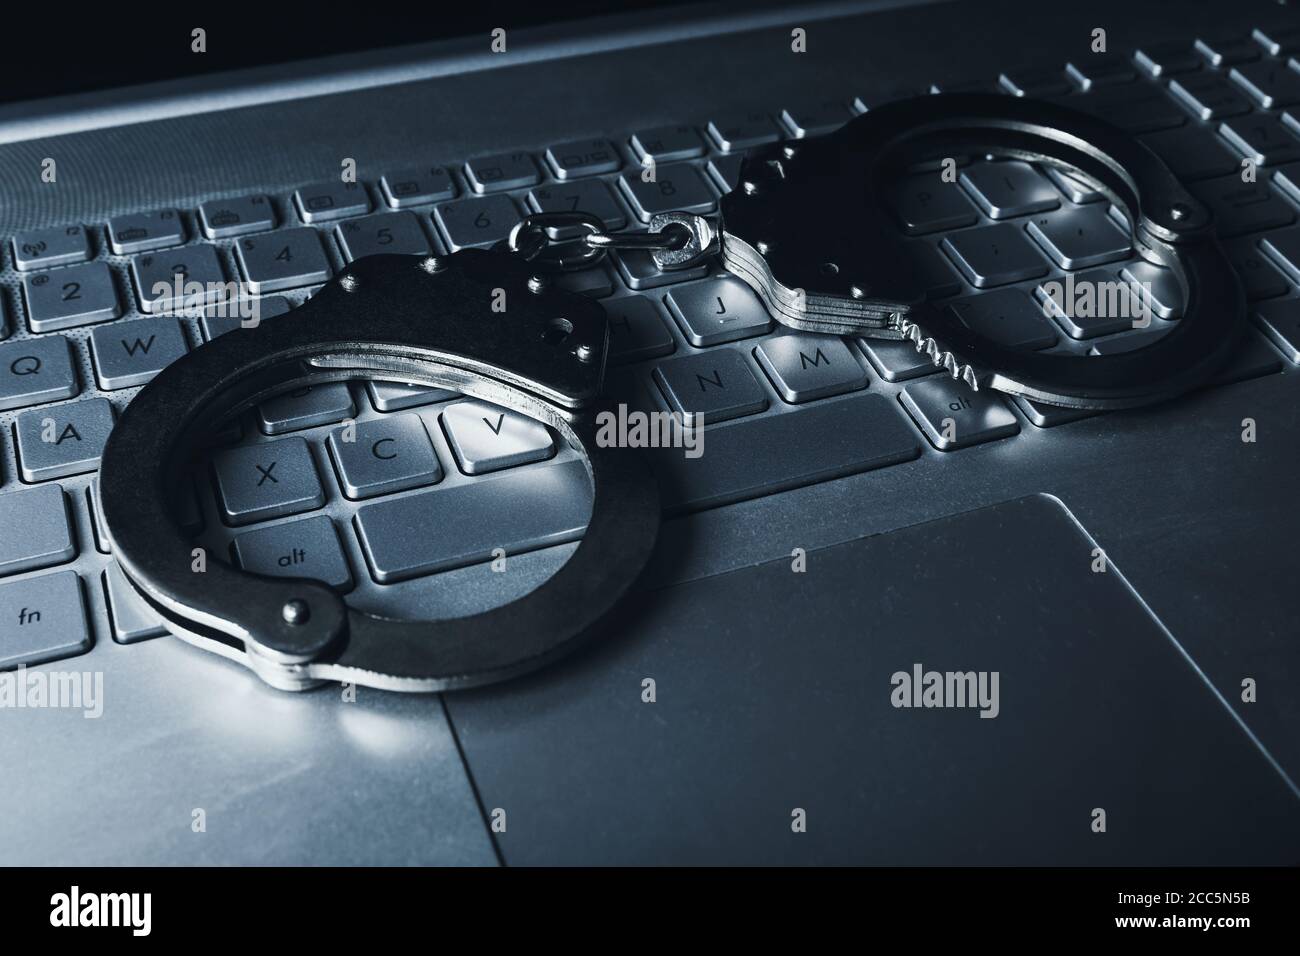 internet-Betrug Cyber-Kriminalität Konzept - Handschellen auf Laptop keybpord Stockfoto